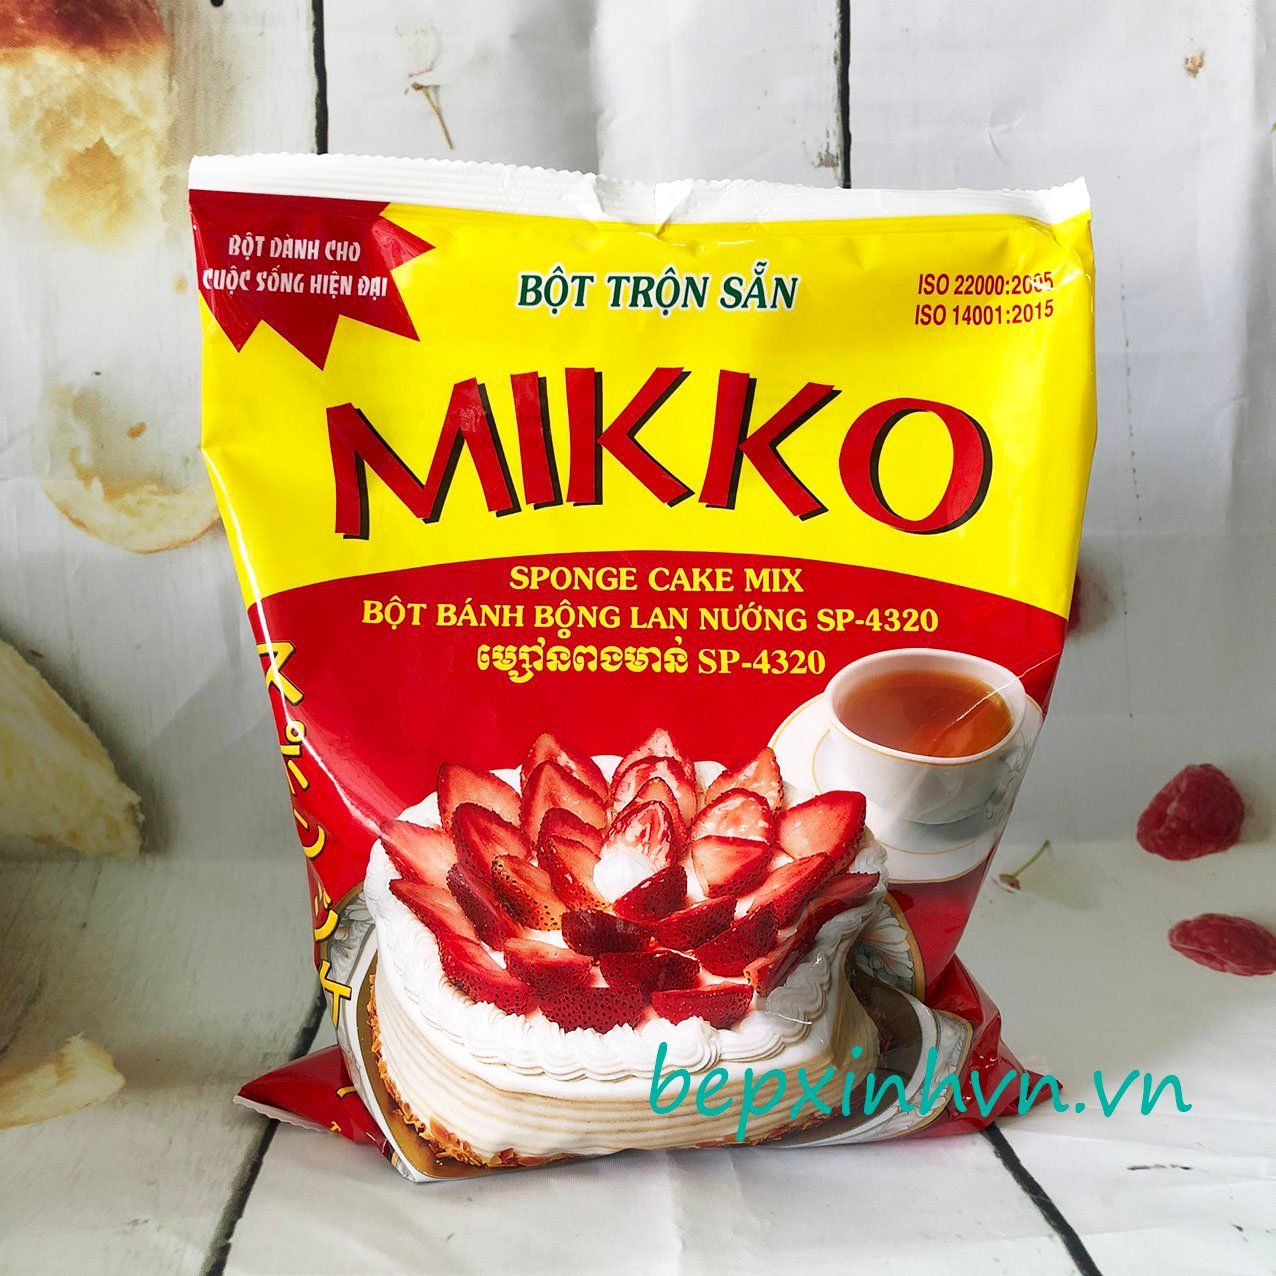 Bột trộn sẵn bánh bông lan nướng Mikko 1kg